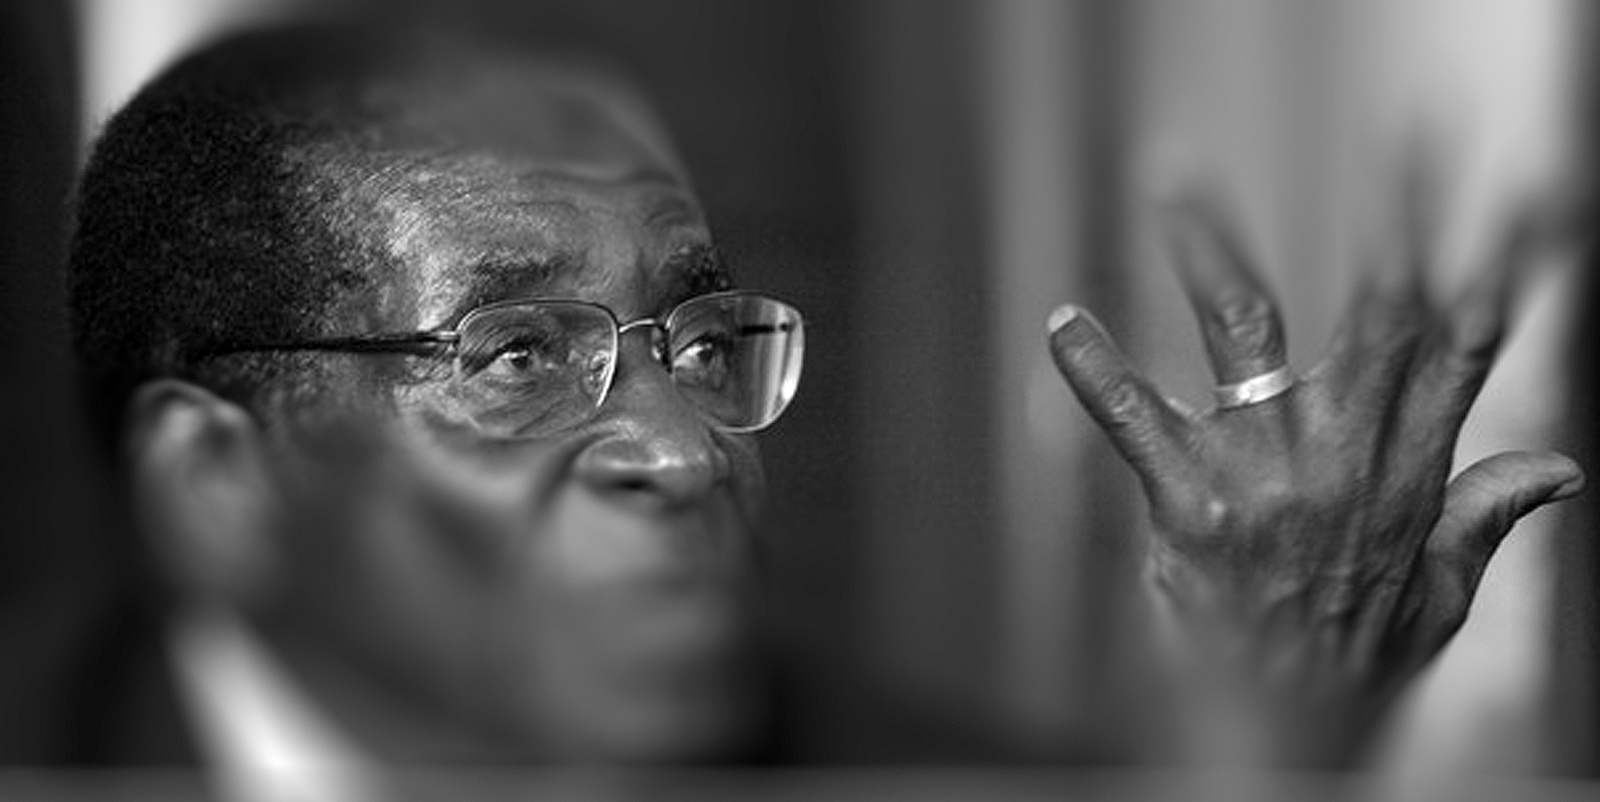 UbuntuFM Africa | Mugabe's Ghost?